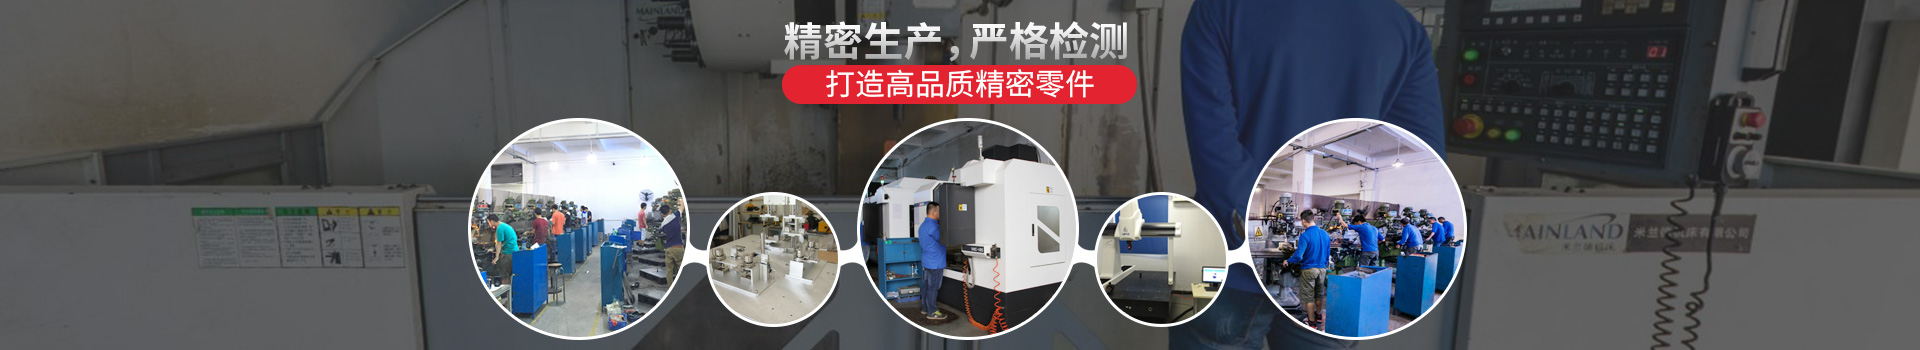 深圳CNC加工廠家,CNC精密機械加工——精密生產,嚴格檢測